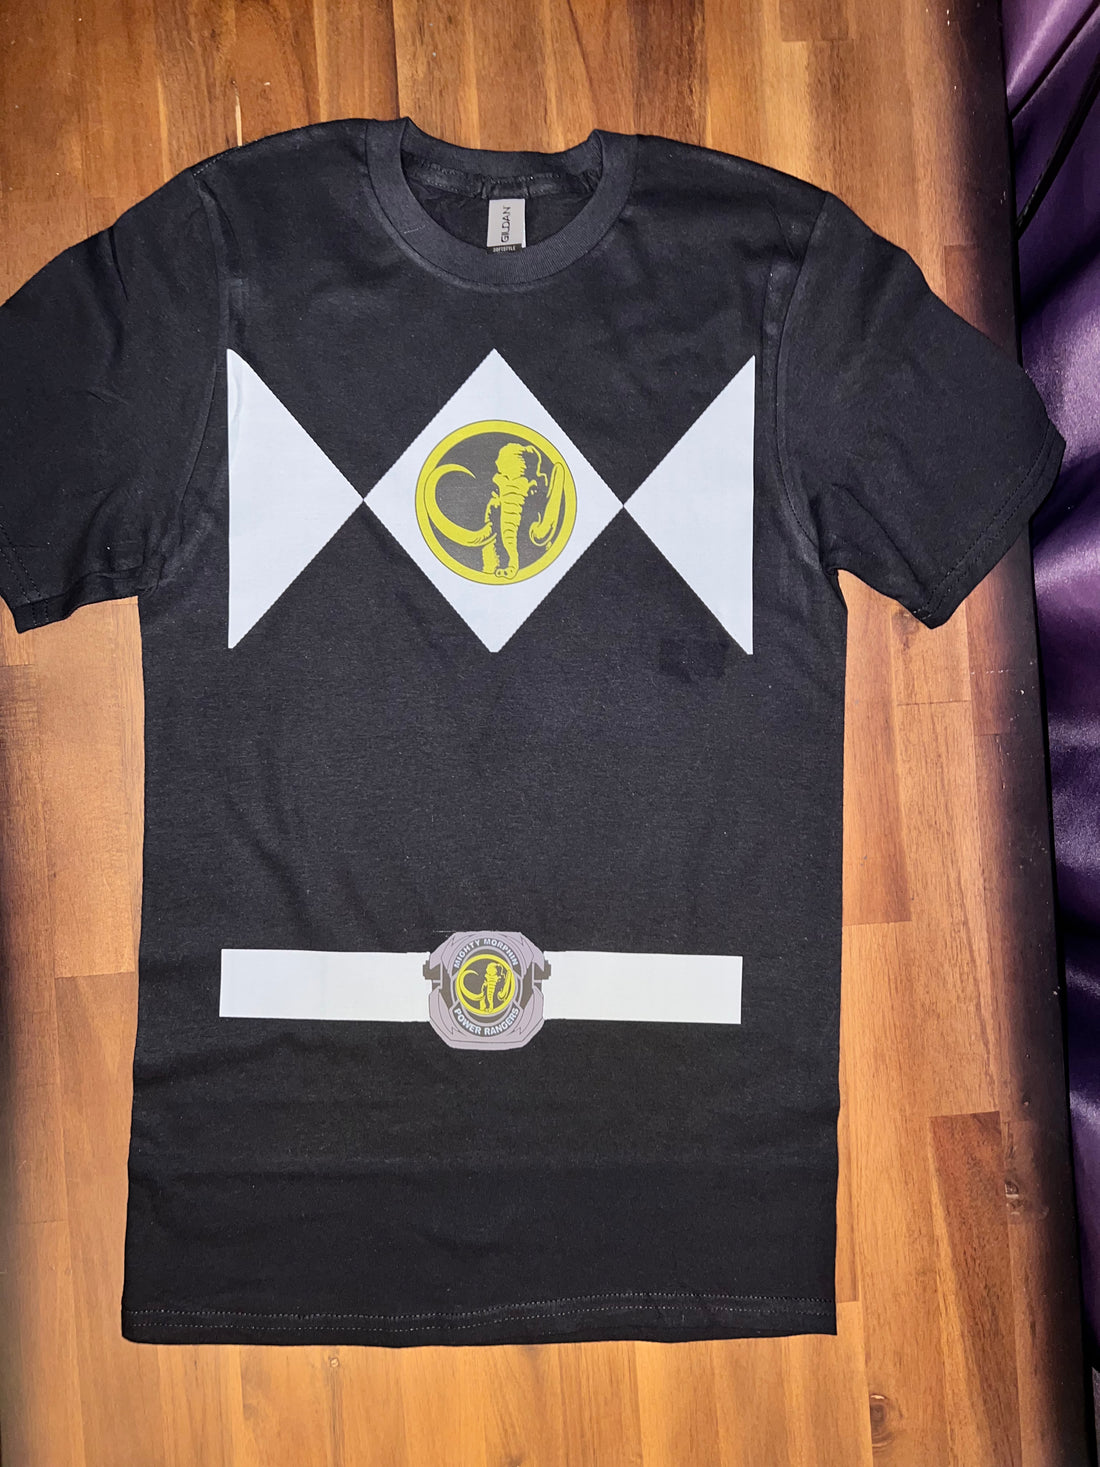 Black Power Ranger T-Shirt